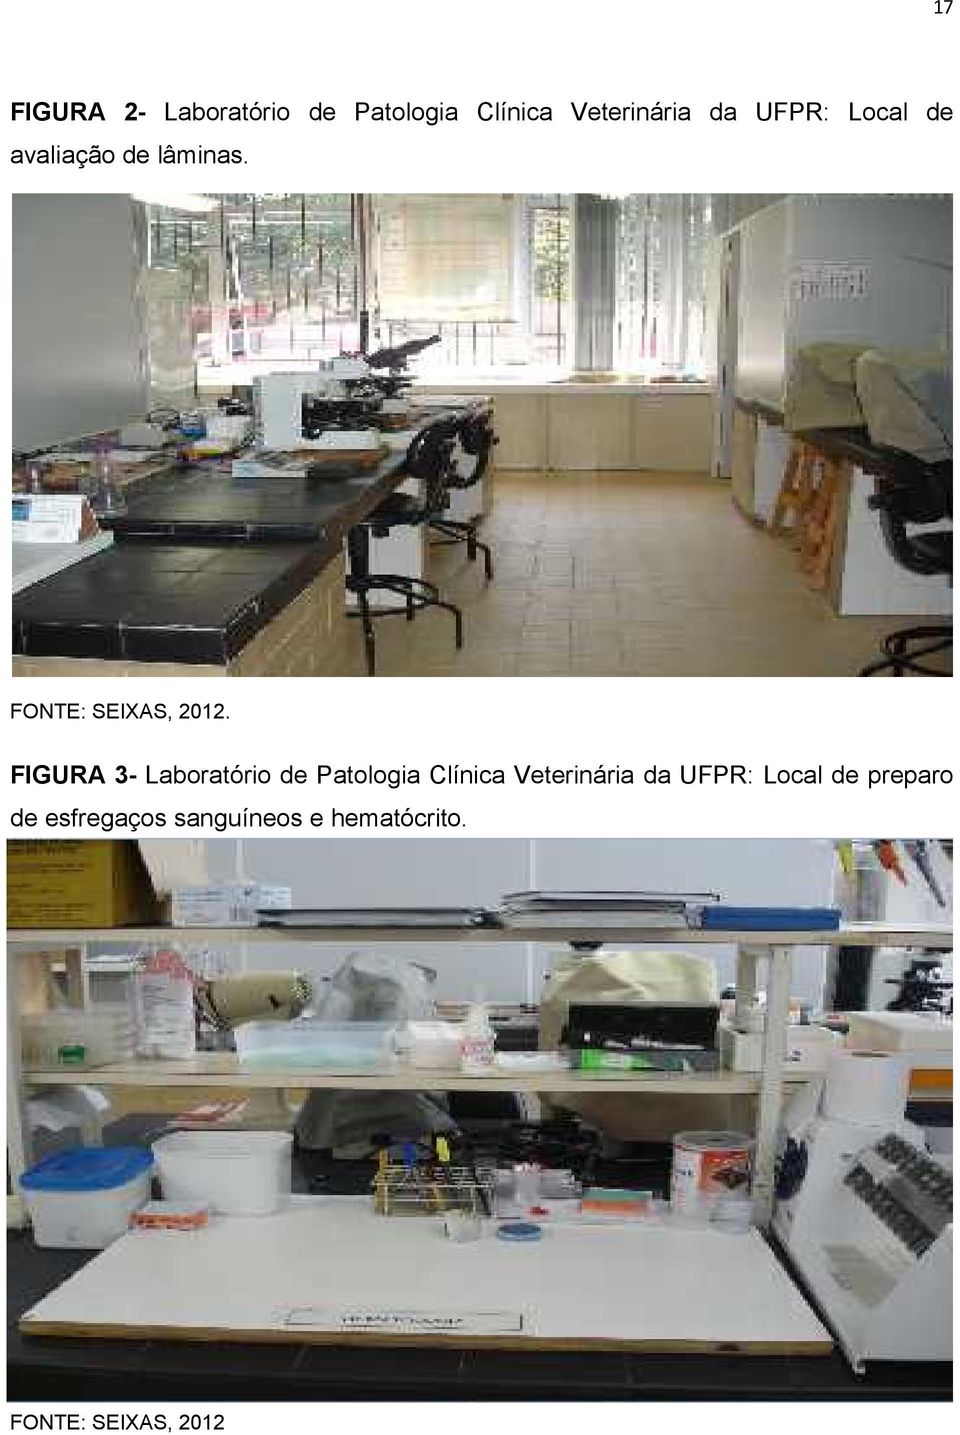 FIGURA 3- Laboratório de Patologia Clínica Veterinária da UFPR: